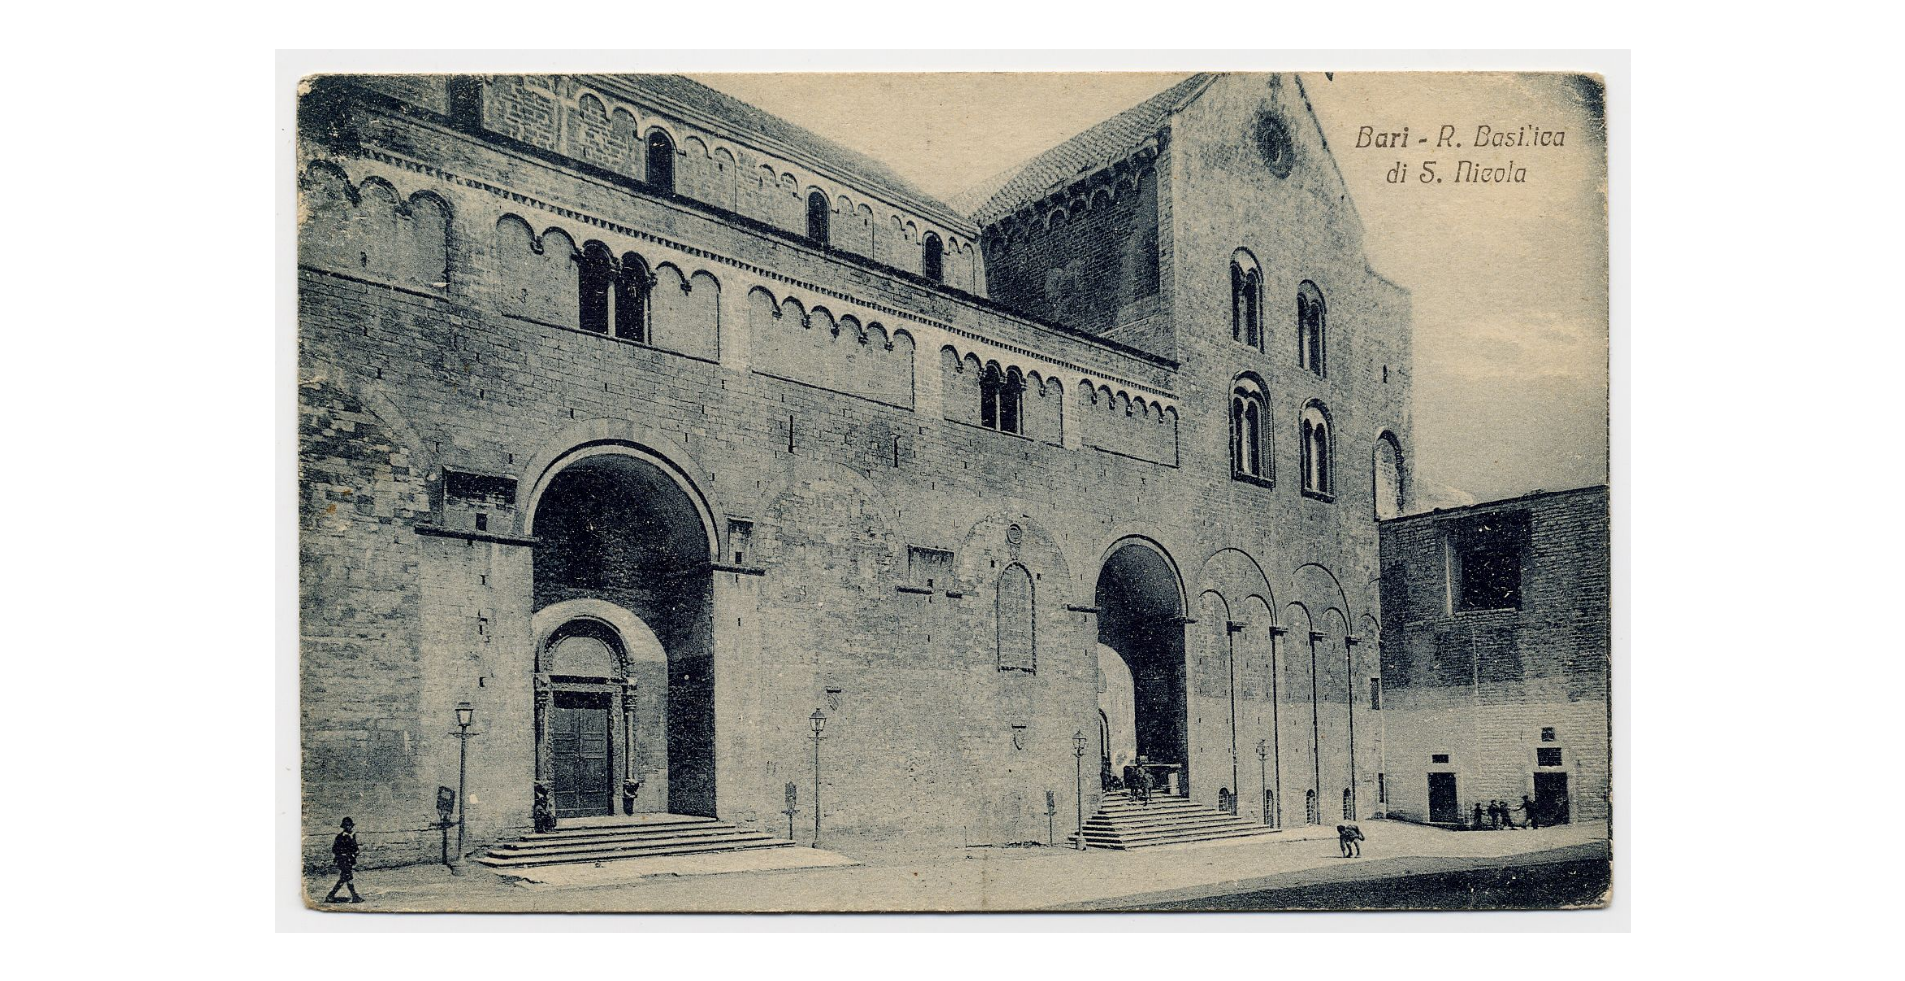 Fotografo non identificato, Bari - Basilica di S. Nicola di Bari, 1925, cartolina, FFC013988